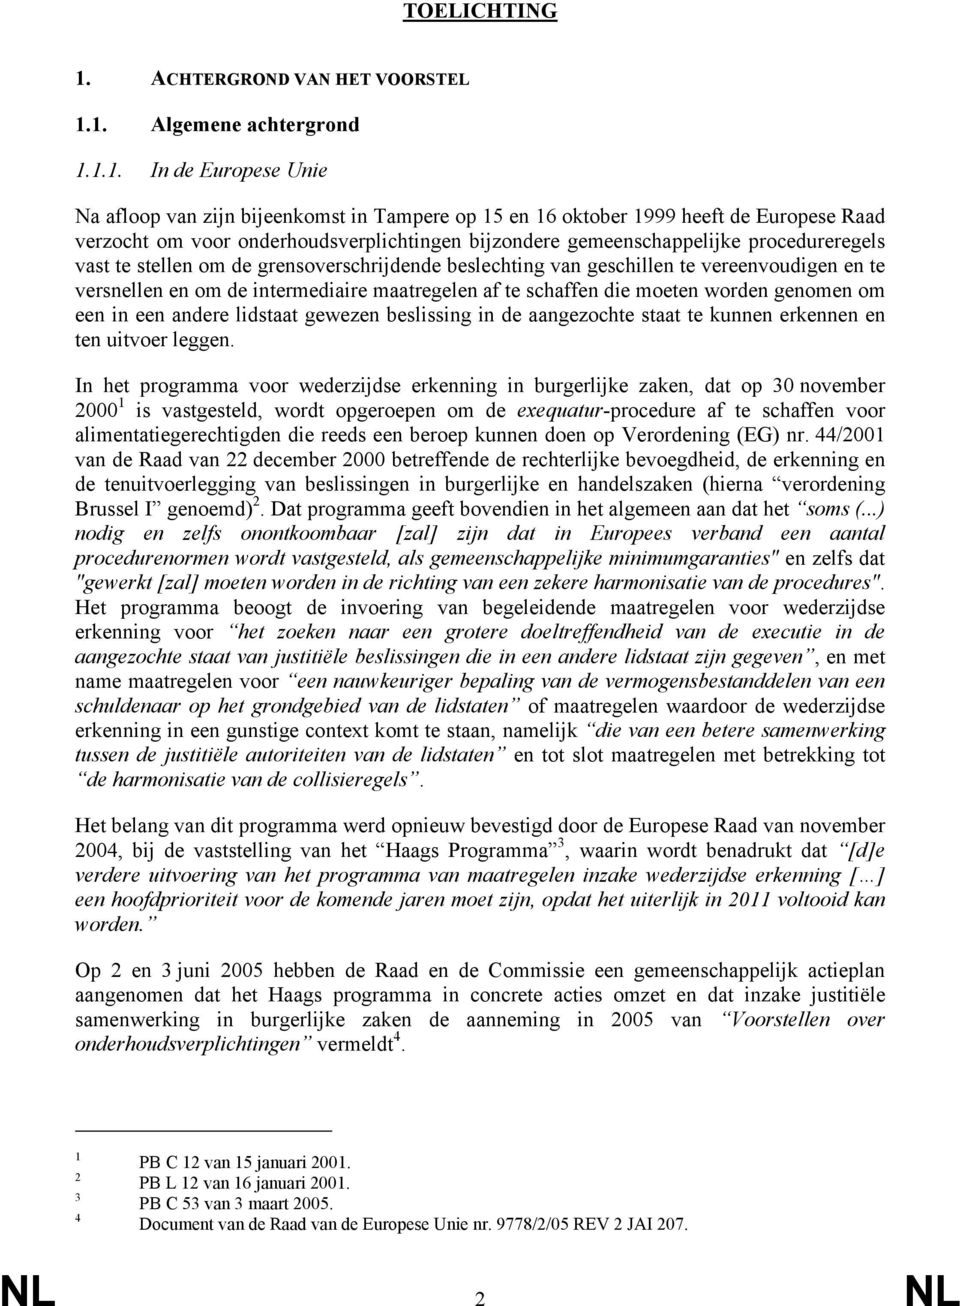 1. Algemene achtergrond 1.1.1. In de Europese Unie Na afloop van zijn bijeenkomst in Tampere op 15 en 16 oktober 1999 heeft de Europese Raad verzocht om voor onderhoudsverplichtingen bijzondere